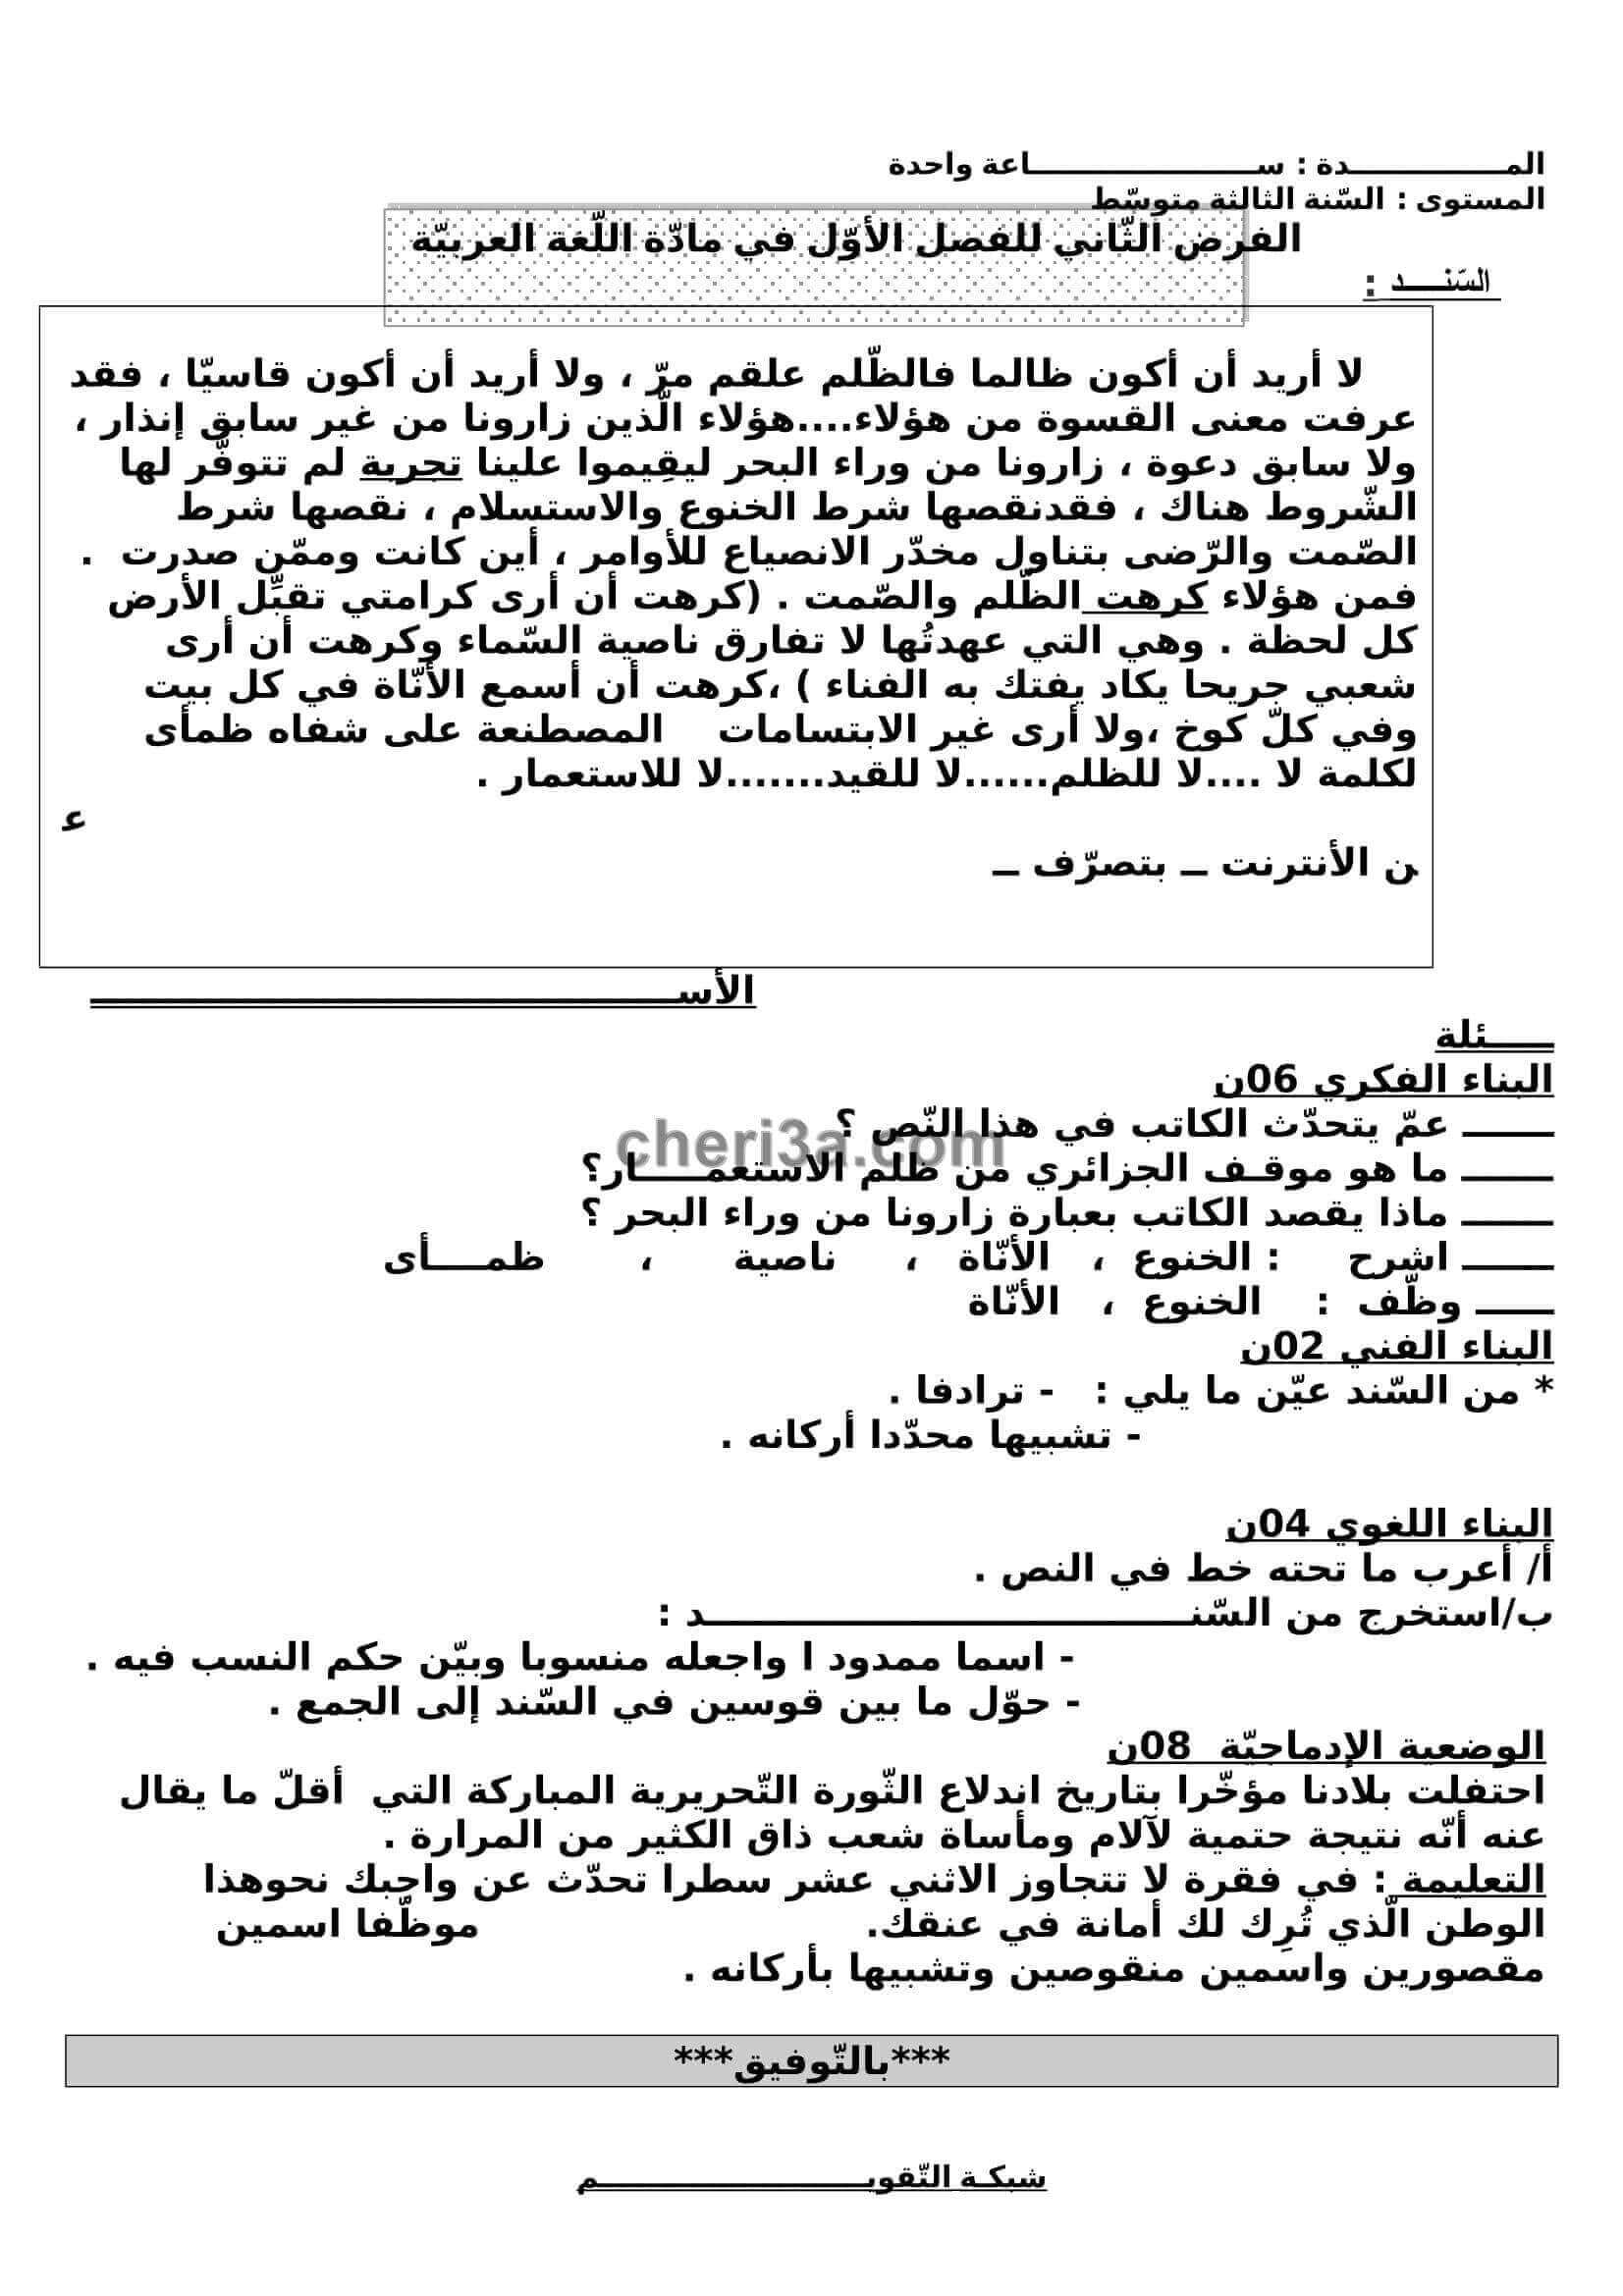 اختبار الفصل الاول للسنة الثالثة متوسط في اللغة العربية النموذج 3